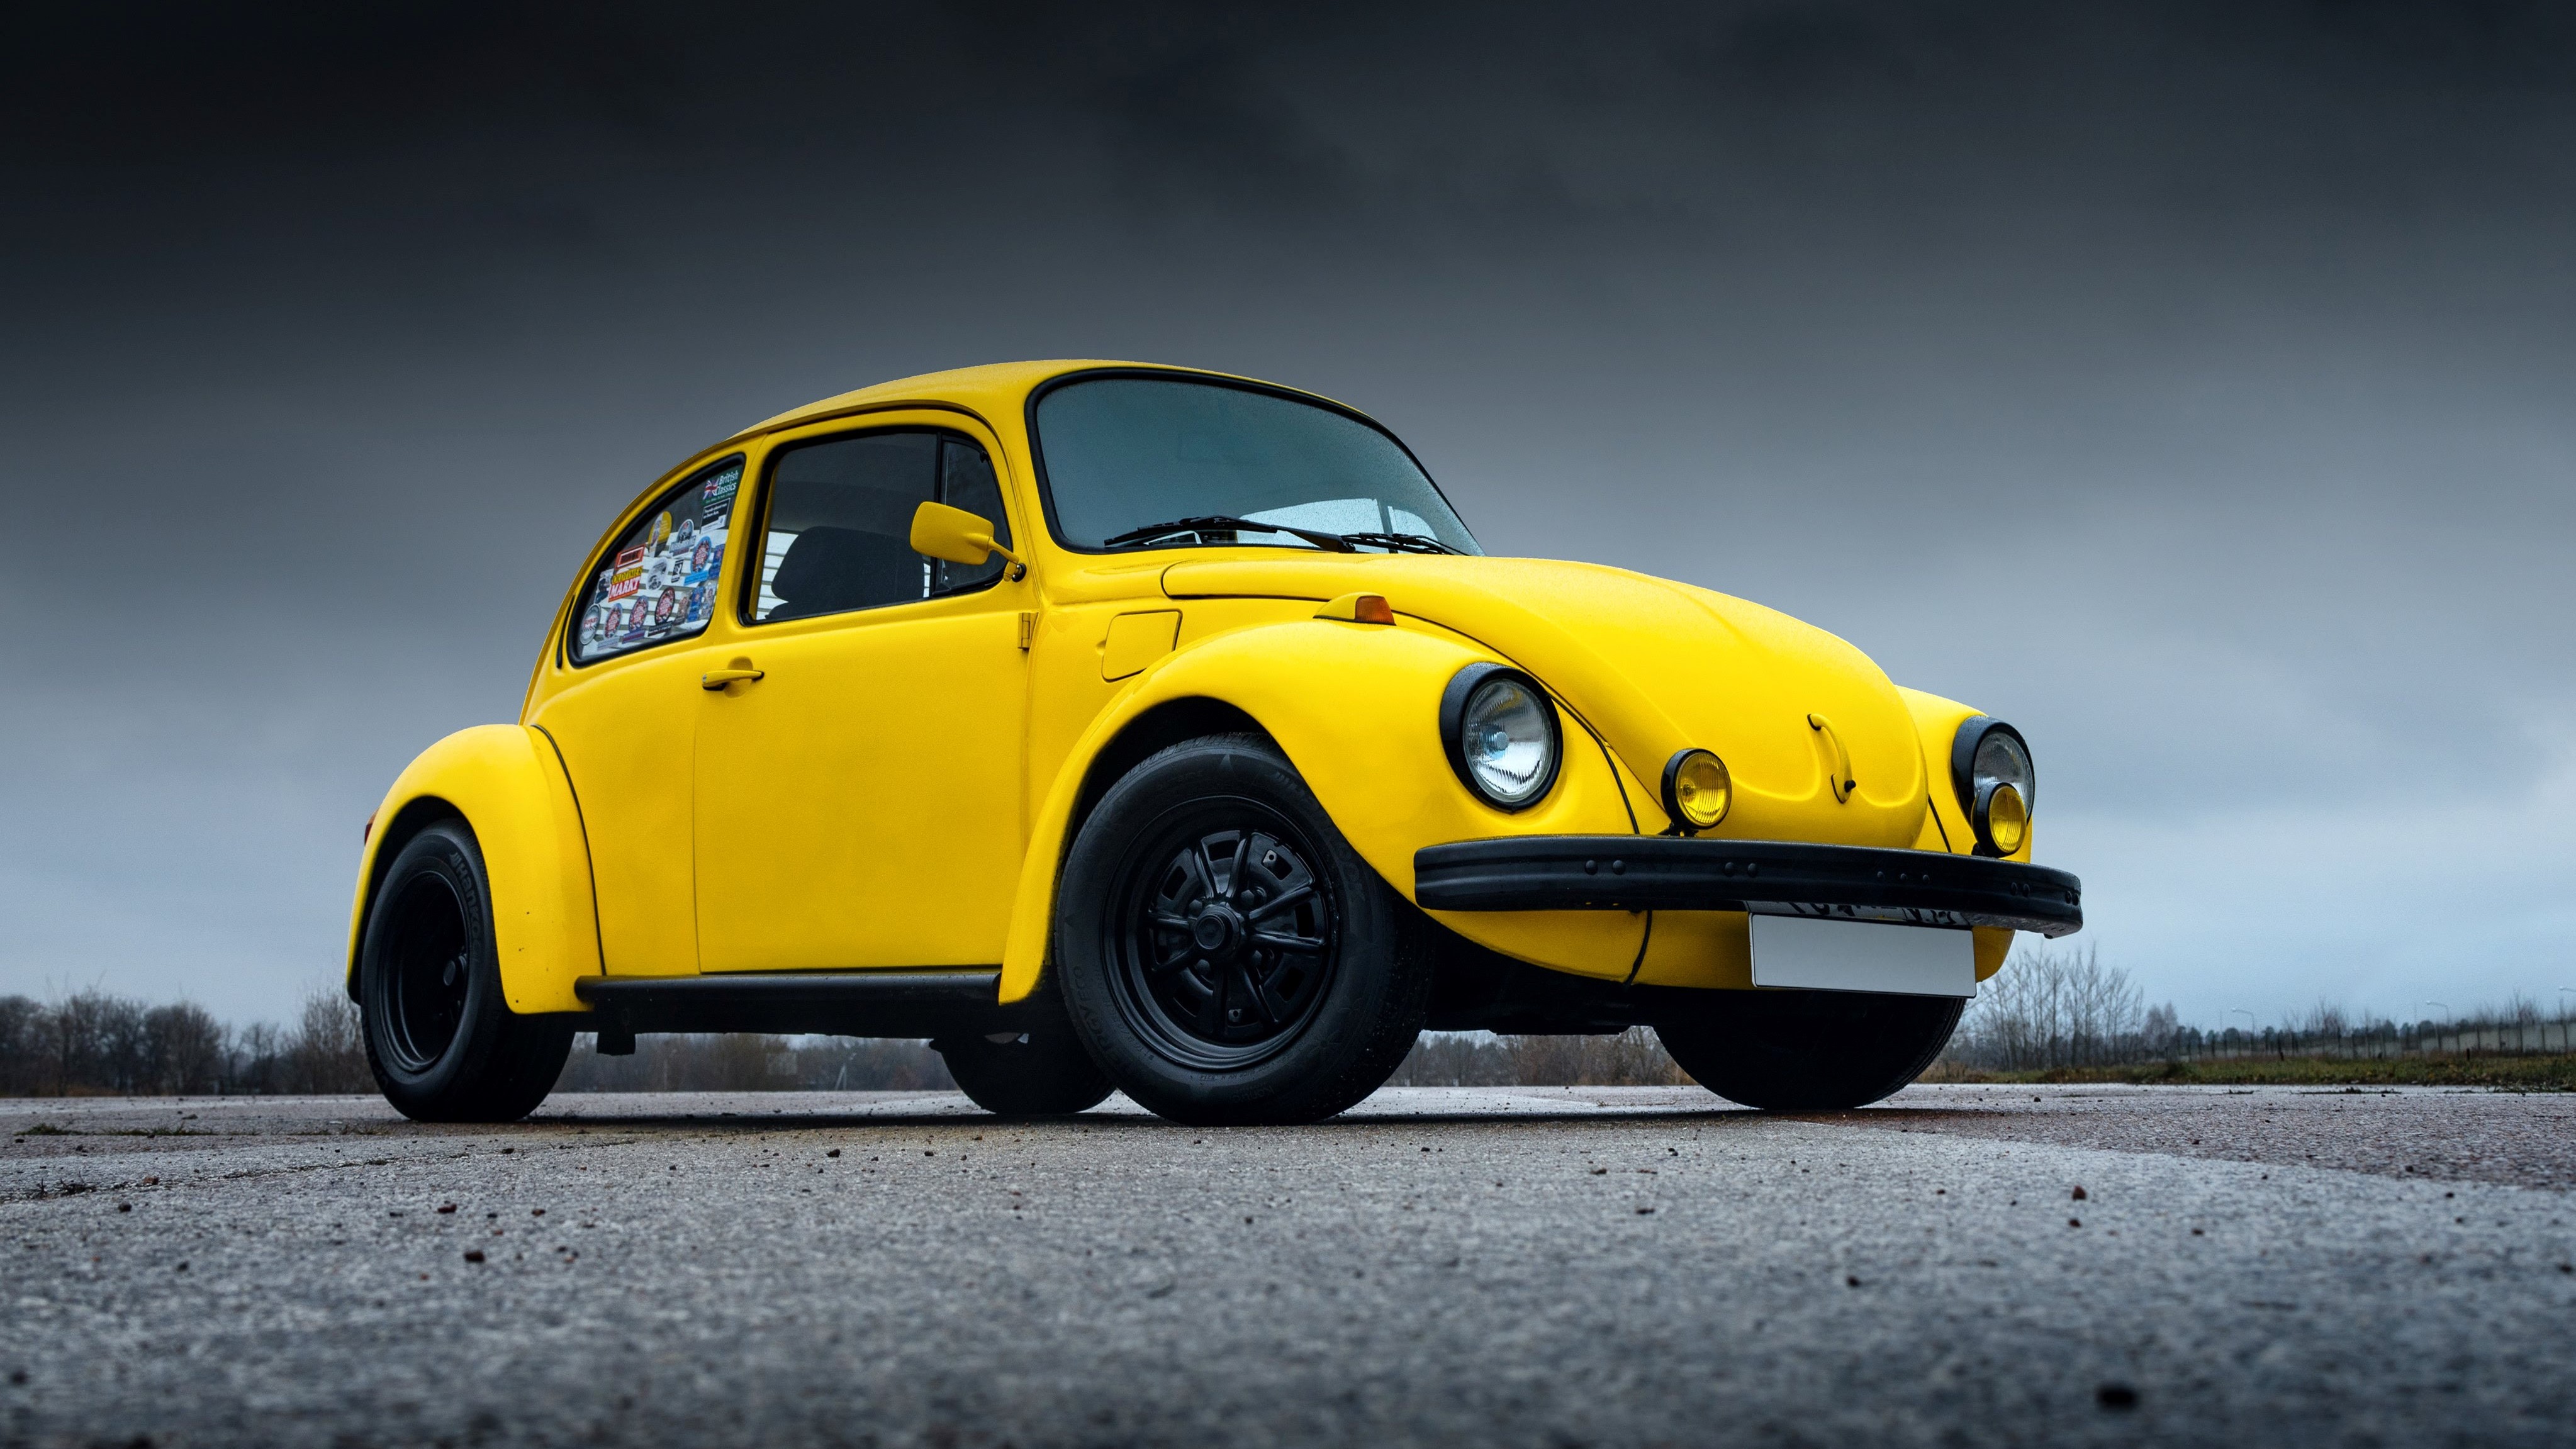 Volkswagen Beetle в образе Бамблби появился в каталоге «Авто.ру»